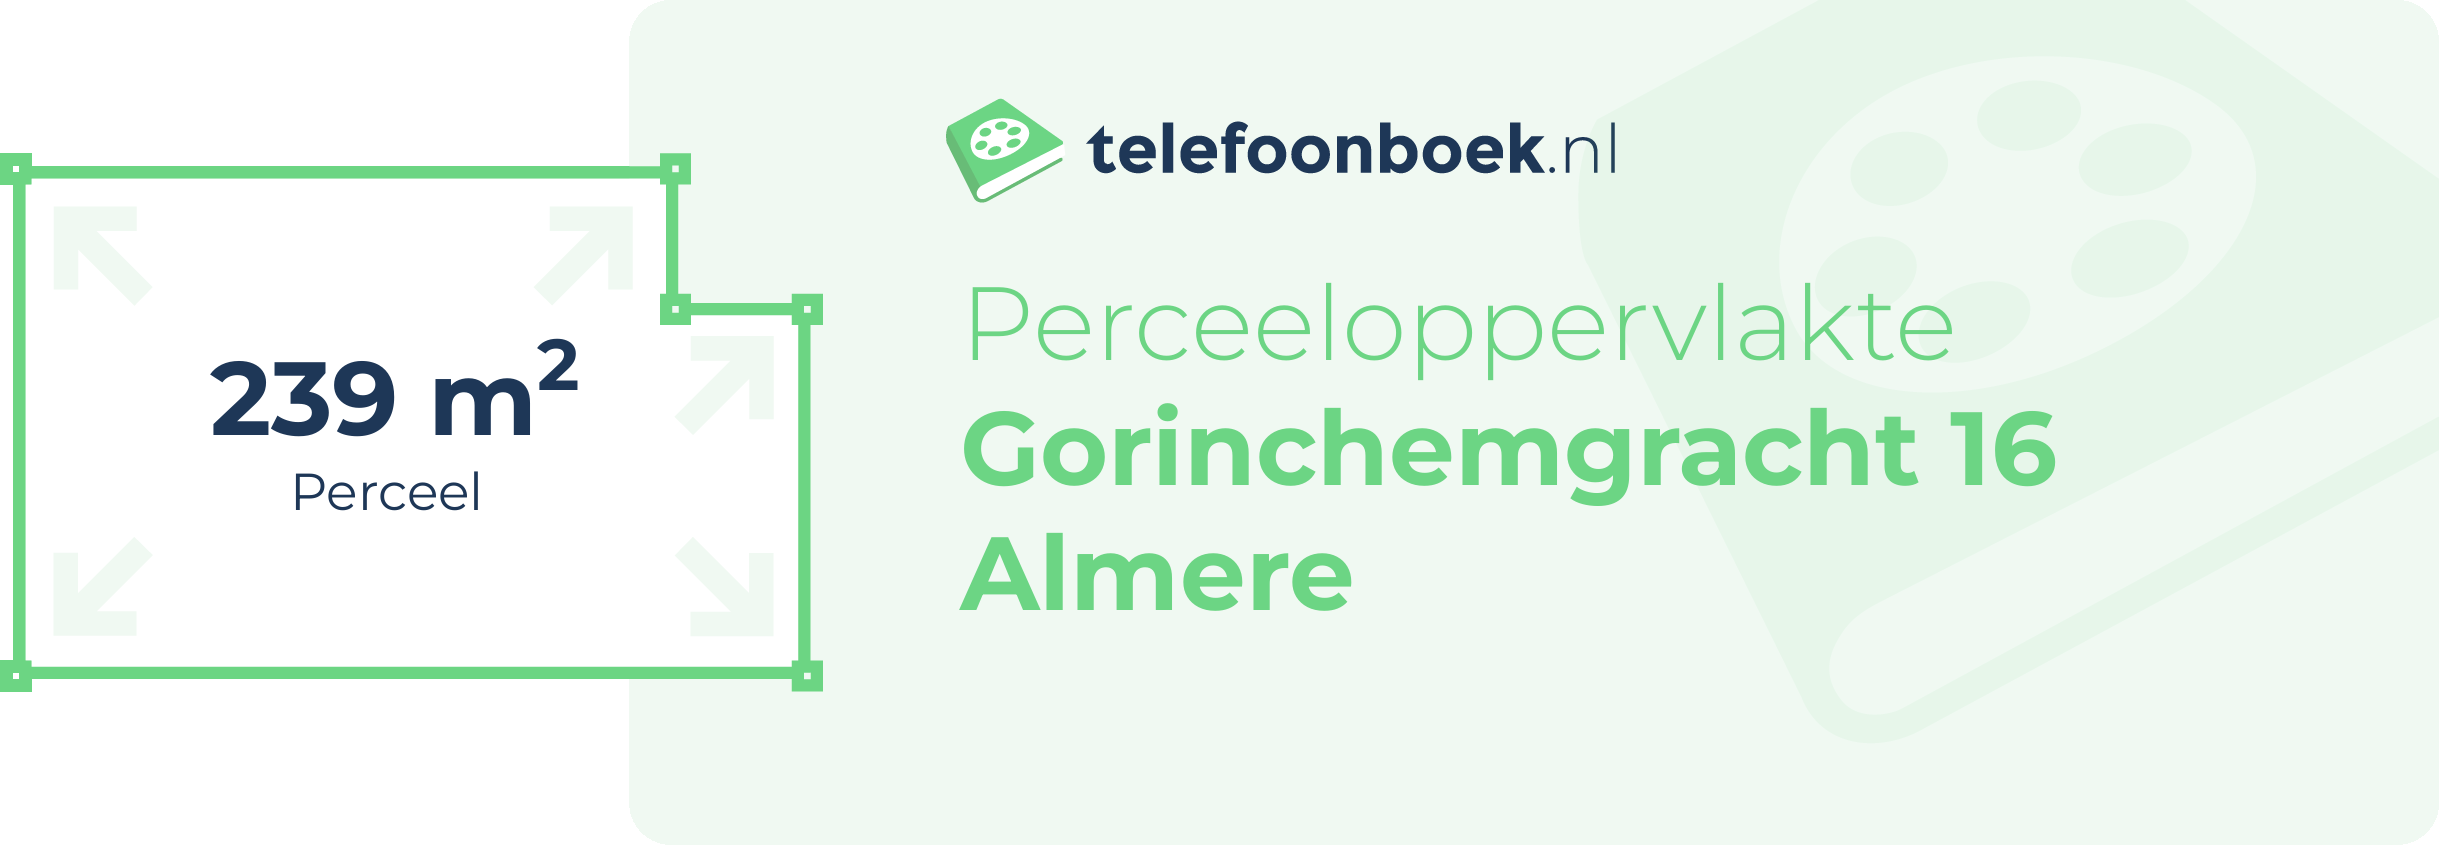 Perceeloppervlakte Gorinchemgracht 16 Almere